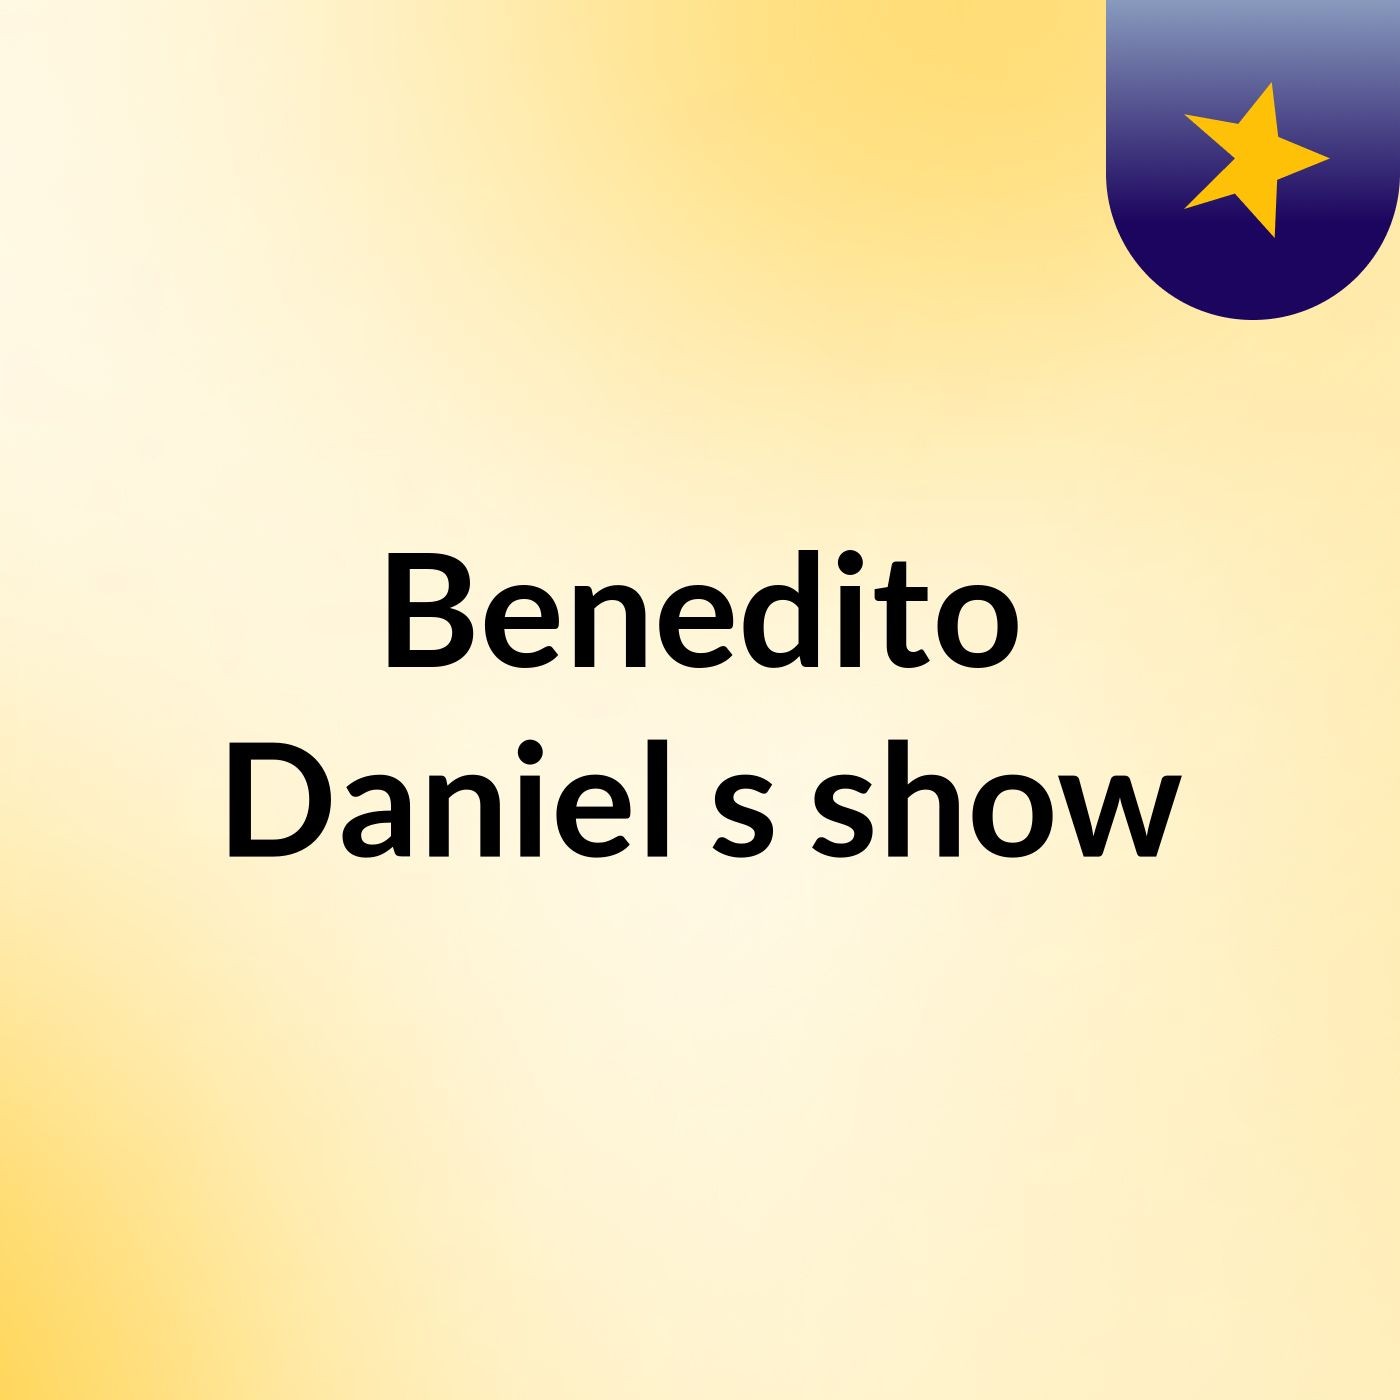 Benedito Daniel's show